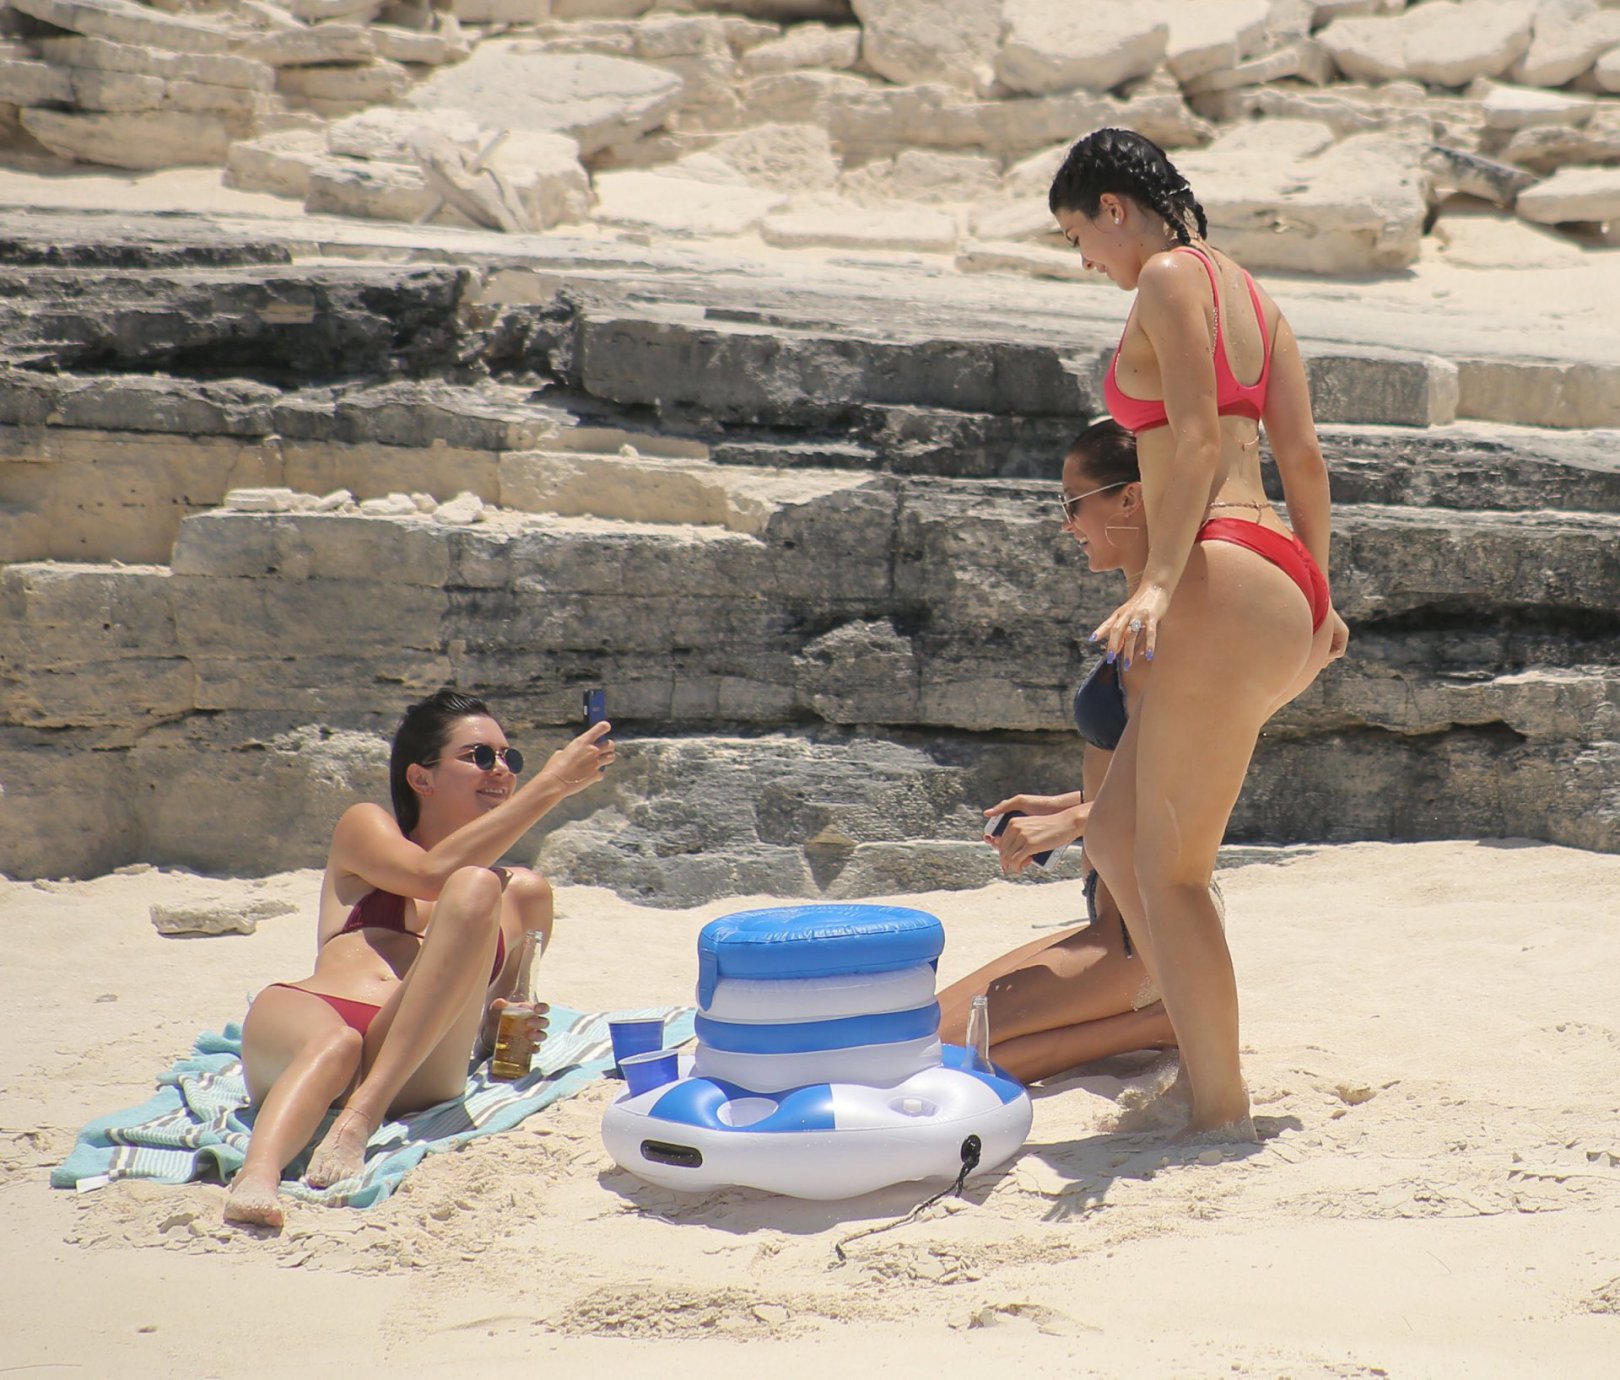 Kyle i Kendall Jenner razem na plaży 